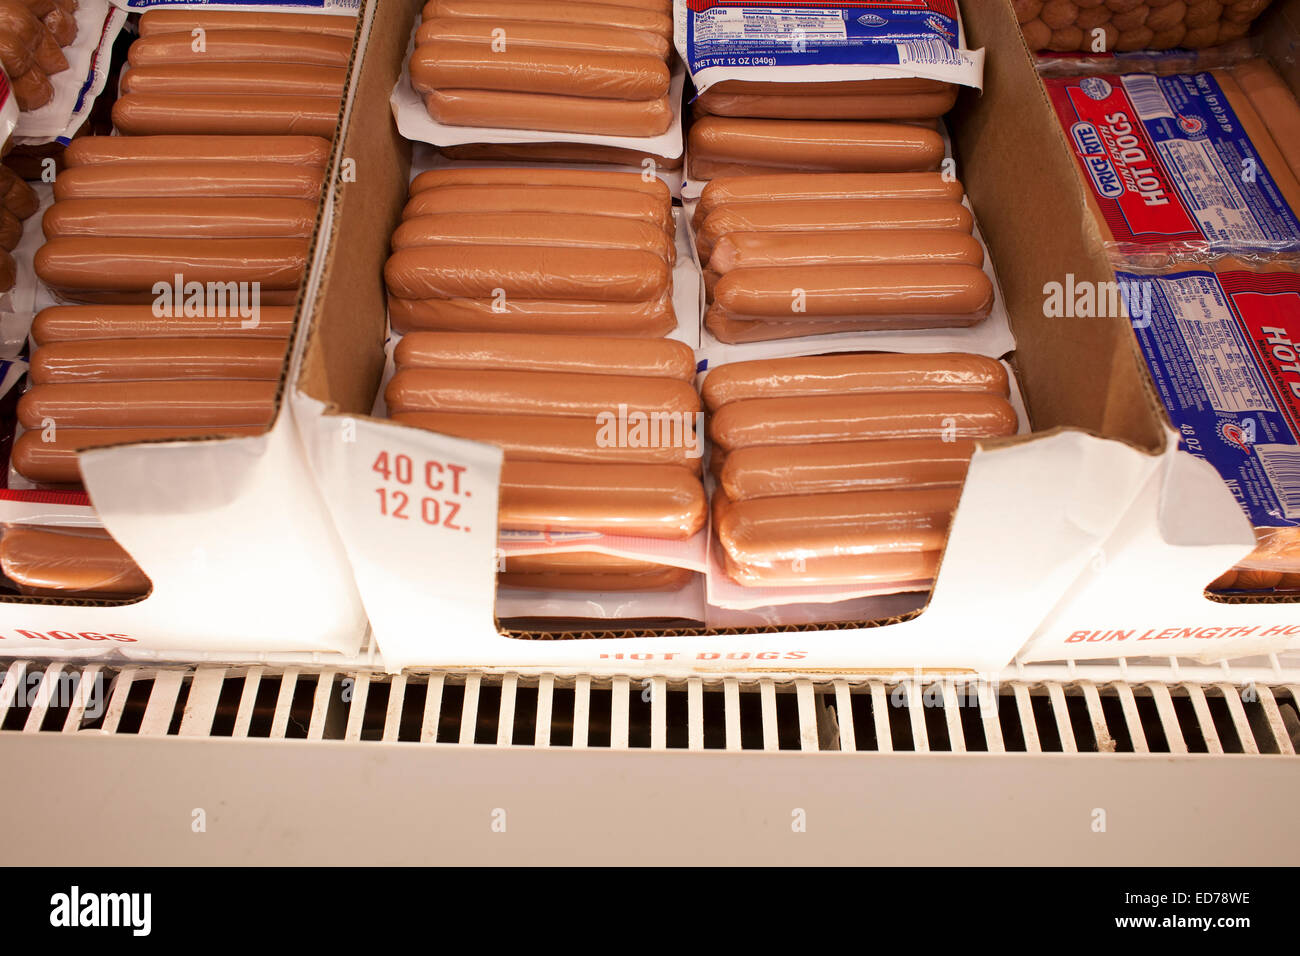 Abschnitt "Fleisch" am Preis Ritus, ein großer Supermarkt in Pittsfield, Massachusetts. Stockfoto